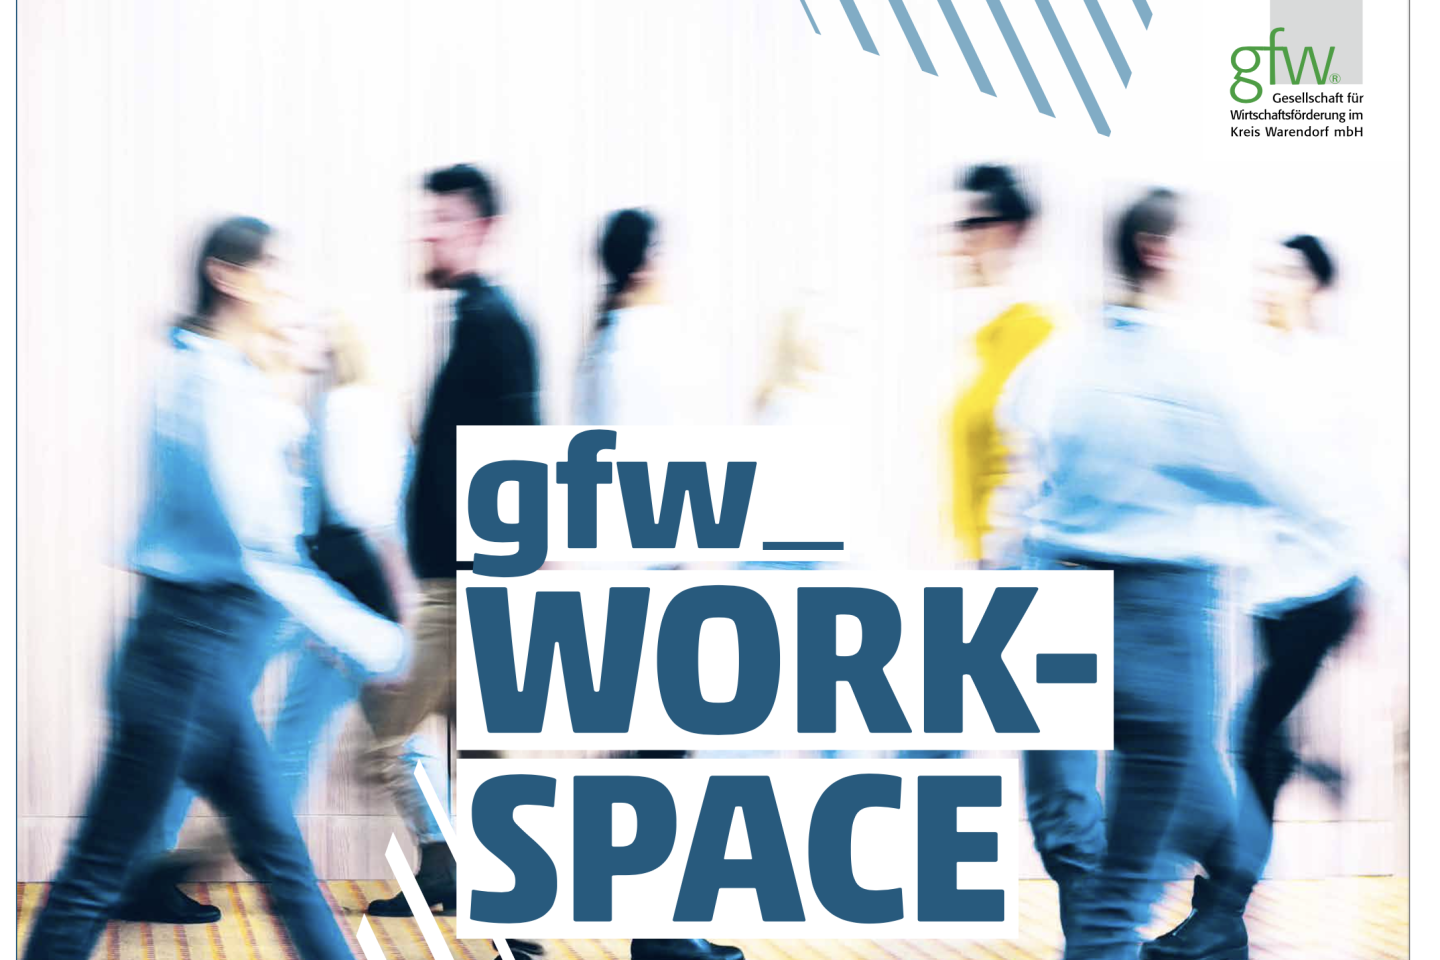 gfw,Work Space,Wirtschaftsförderung,Warendorf,Kreis Warendorf,